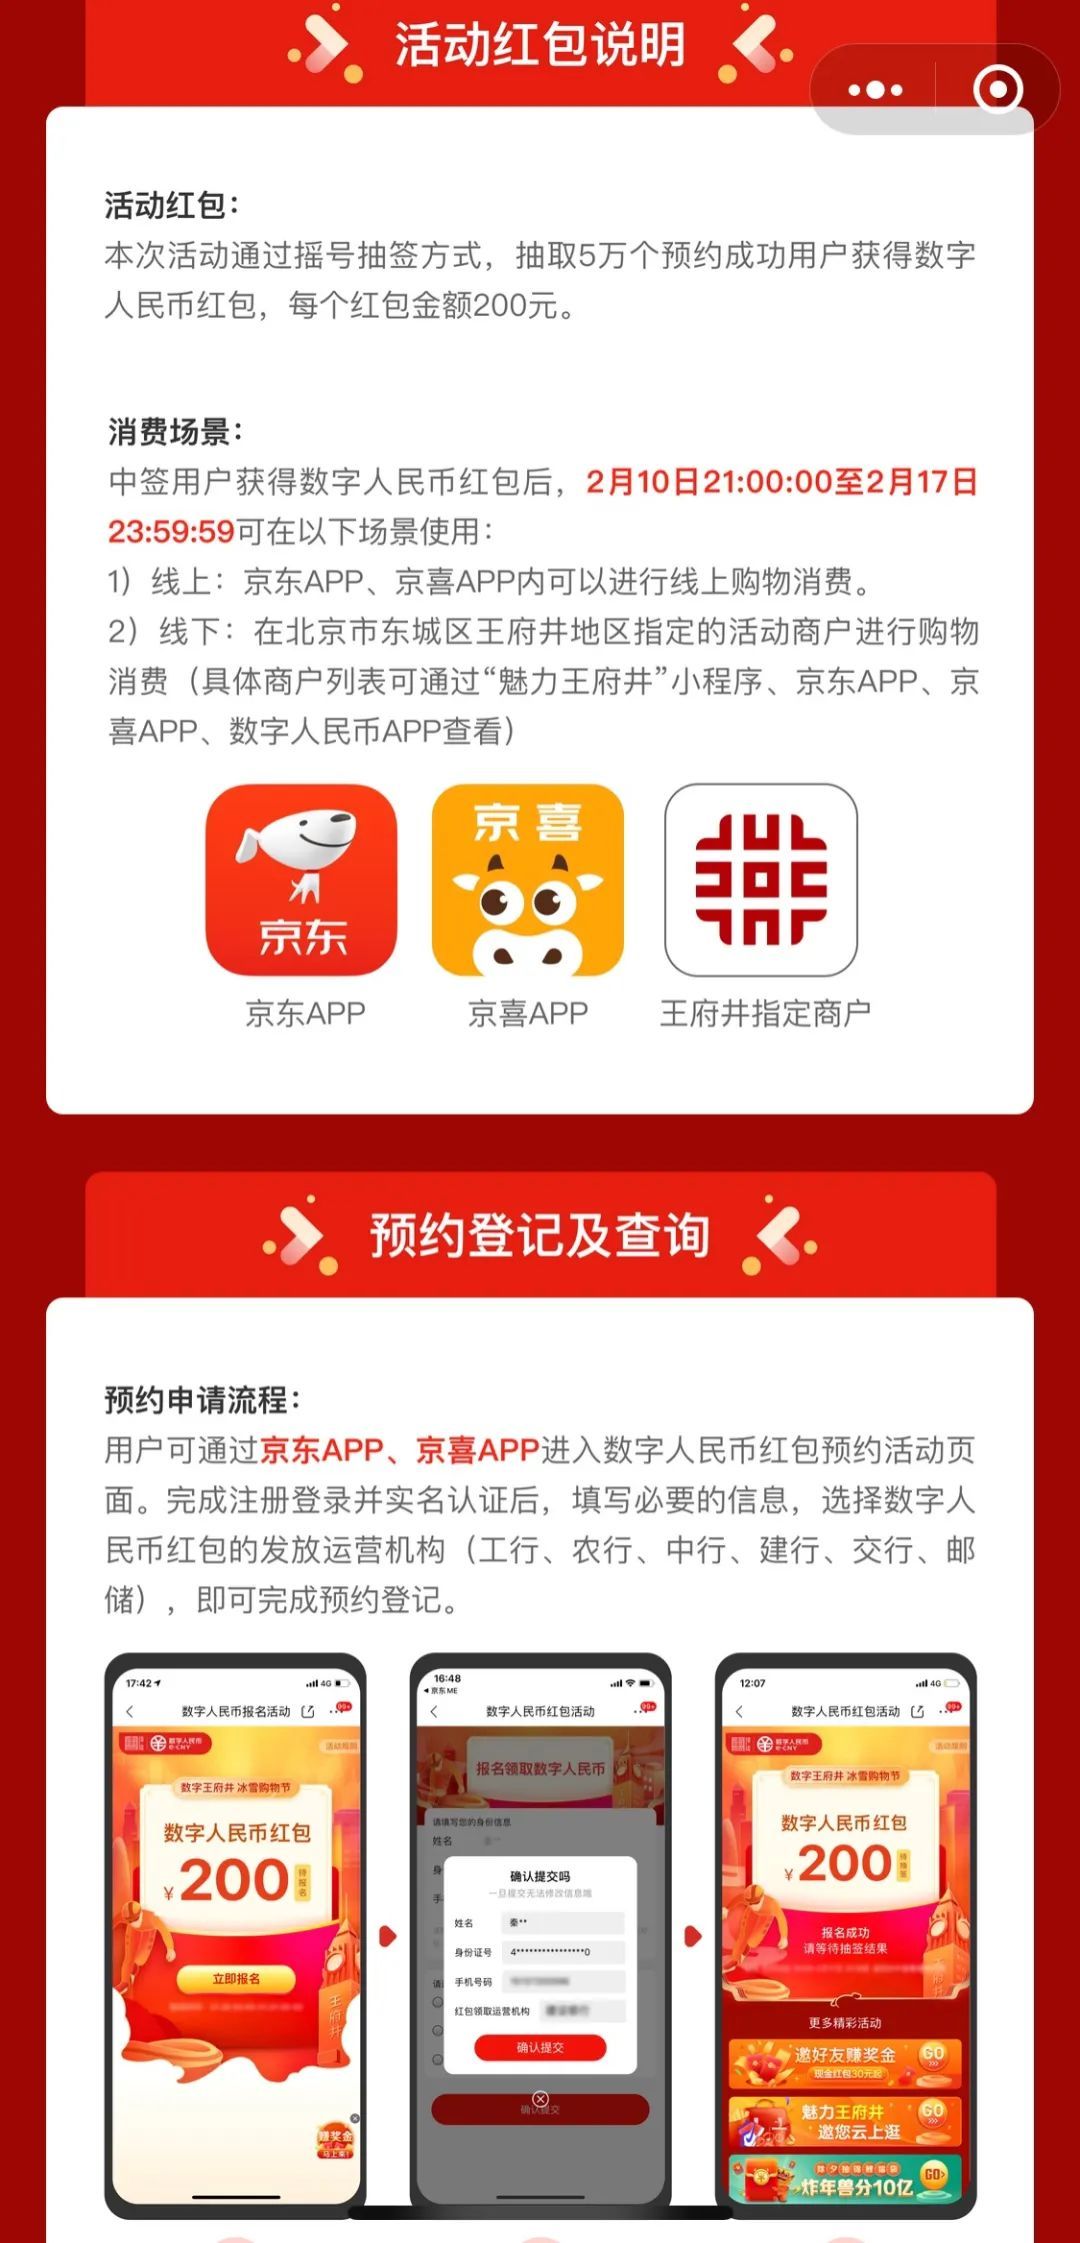 北京数字人民币红包也来了！总额1000万，在京人民抓紧申请，春节期间可使用！试点城市正陆续铺开